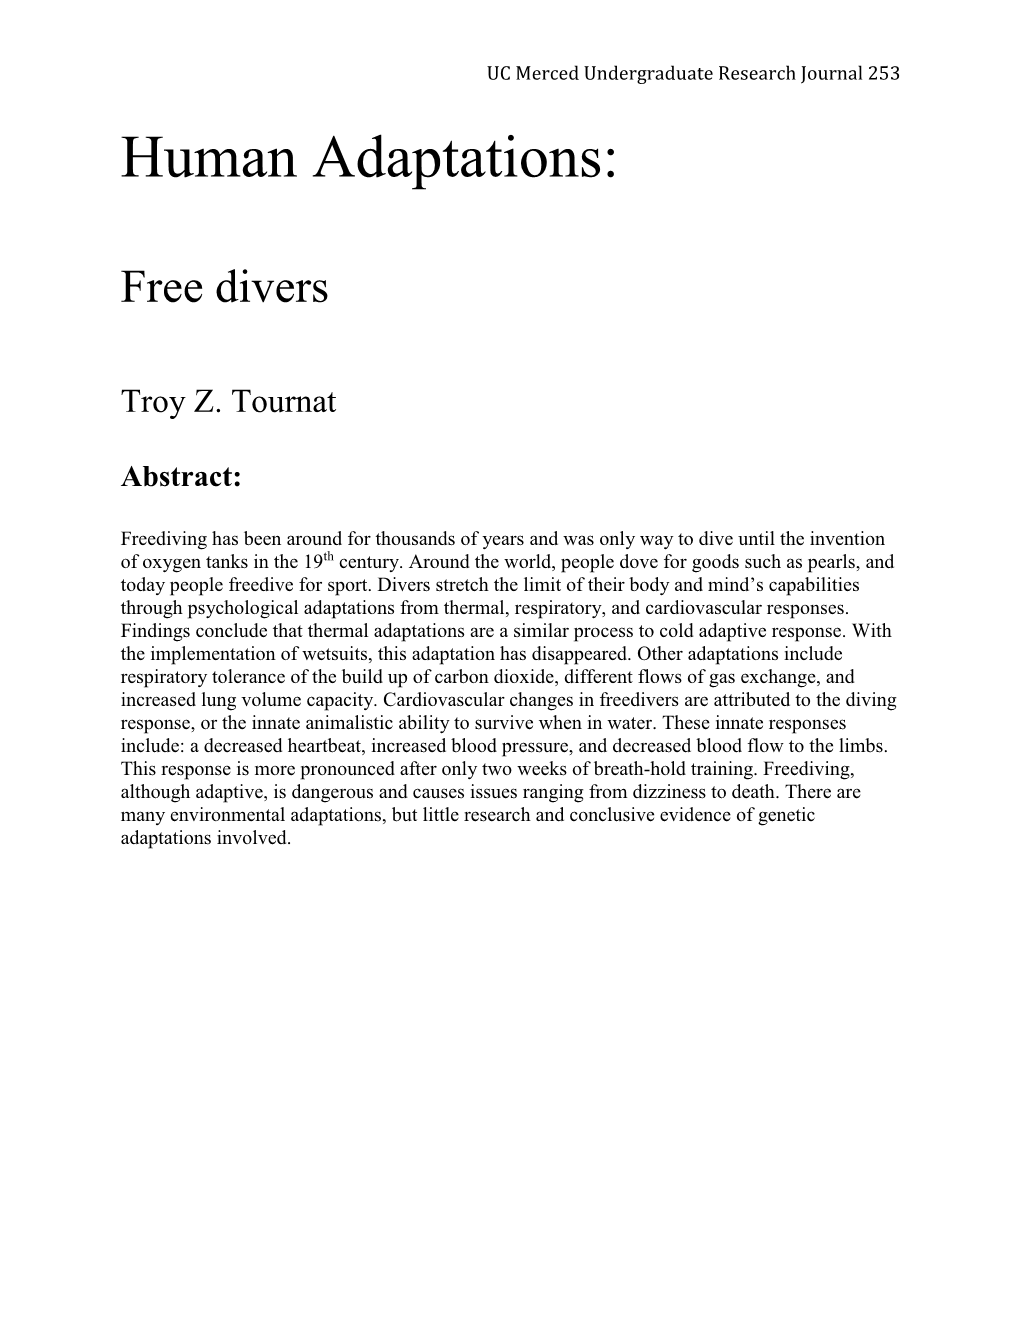 Human Adaptations